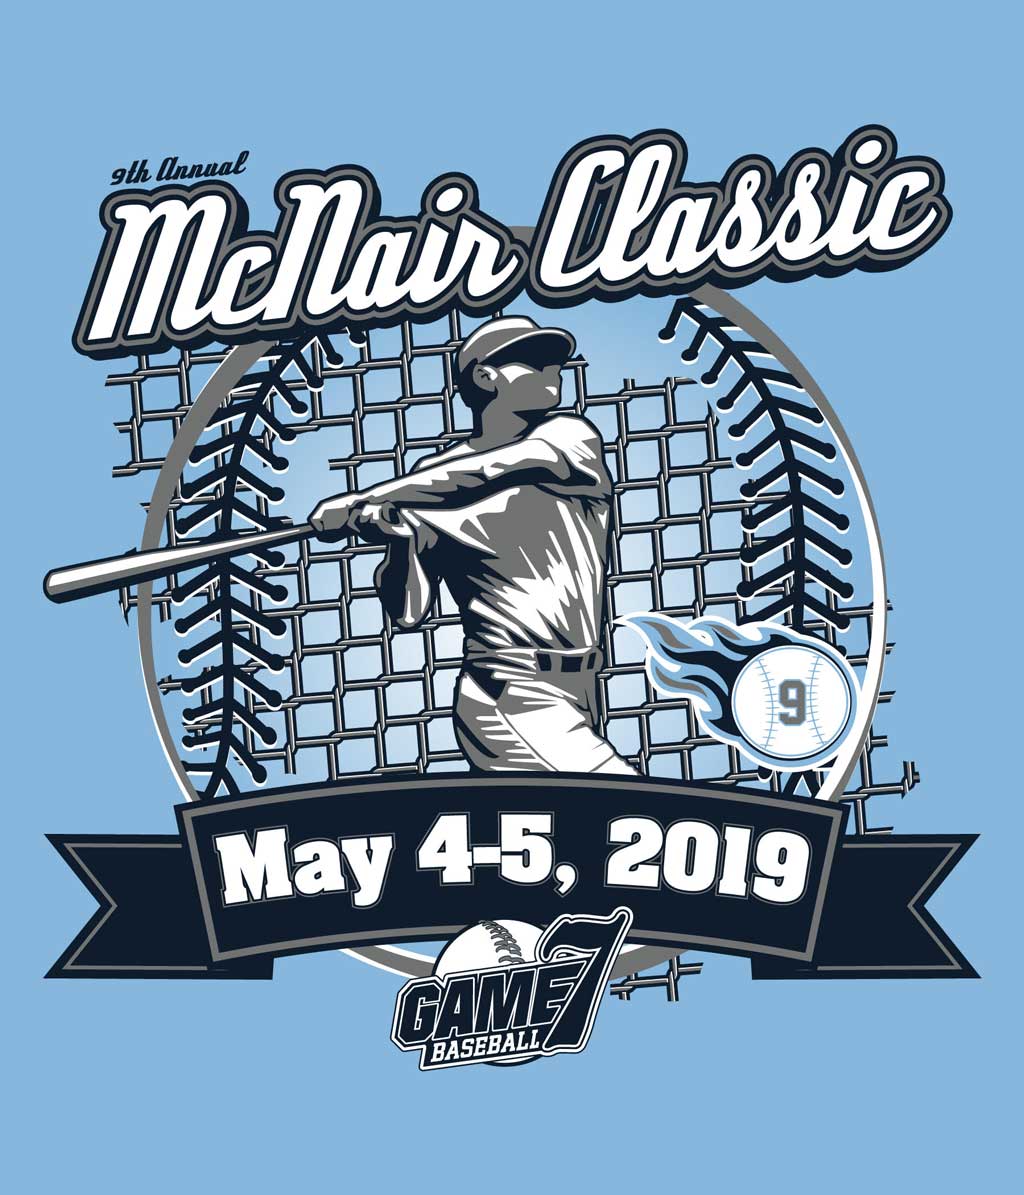 10th Annual TN Game 7 McNair Classic Logo